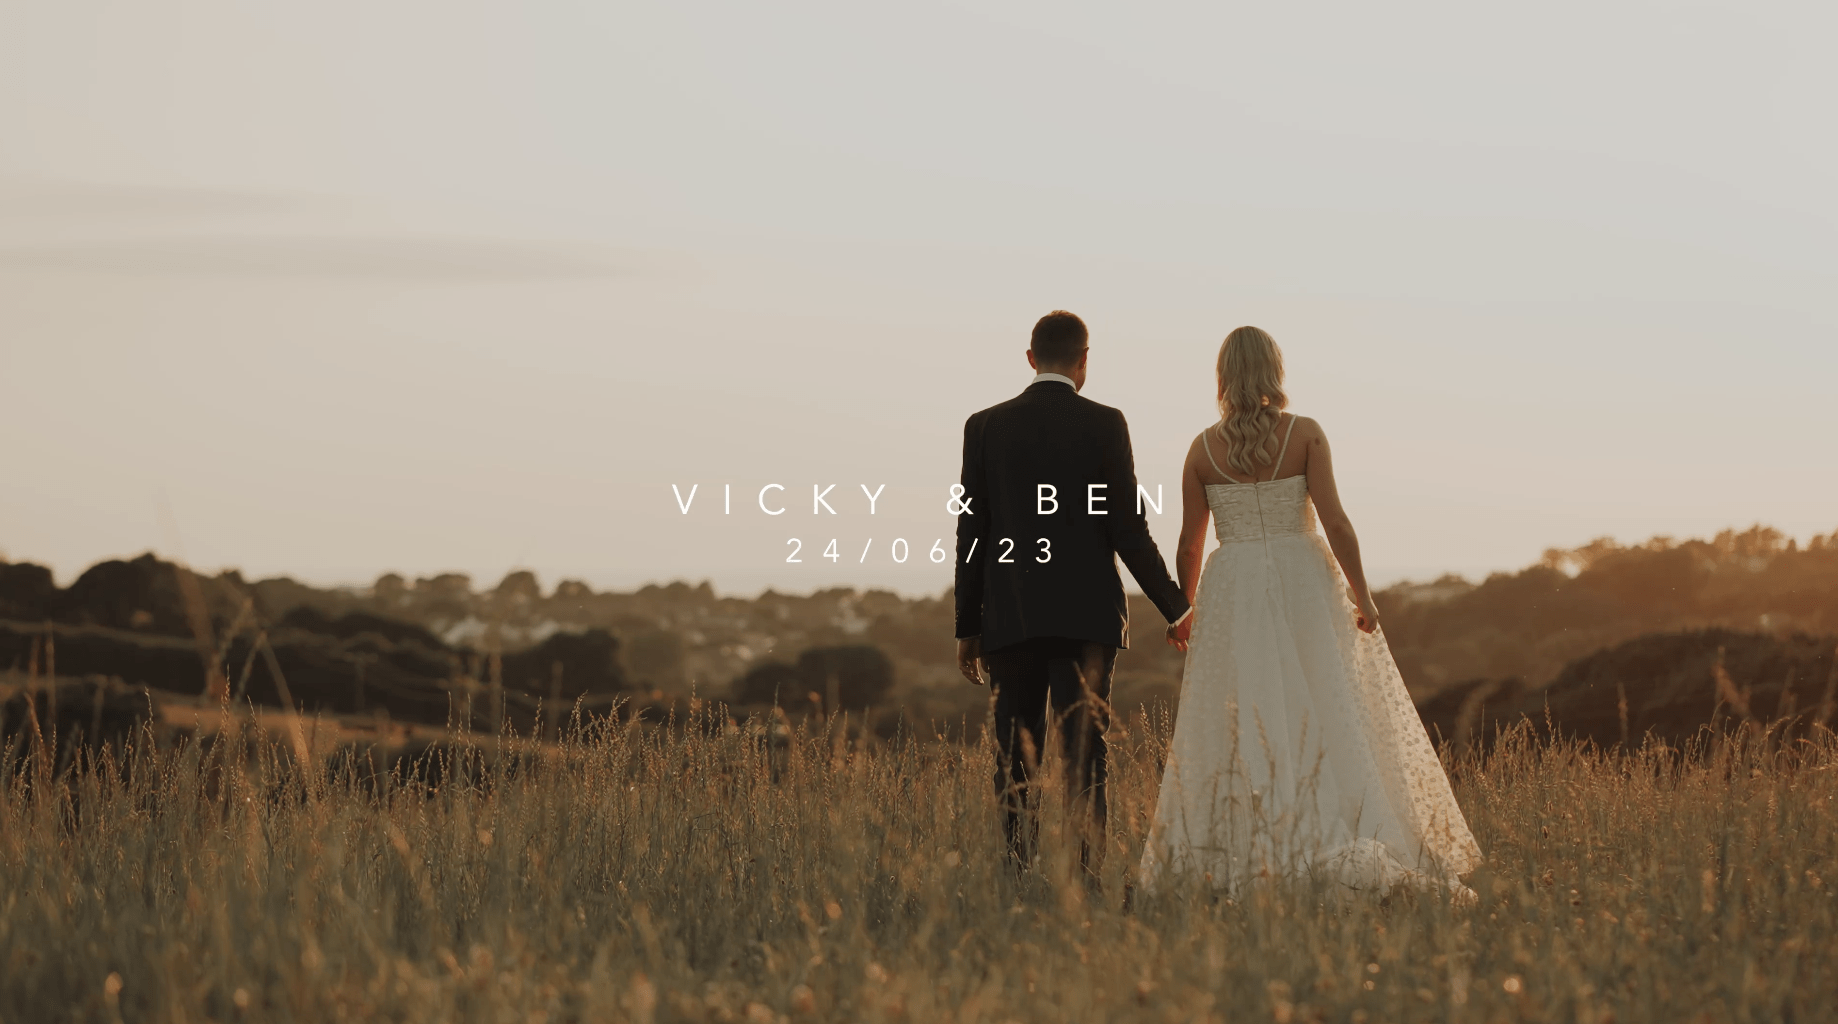 Vicky & Ben - Wedding Film Highlight